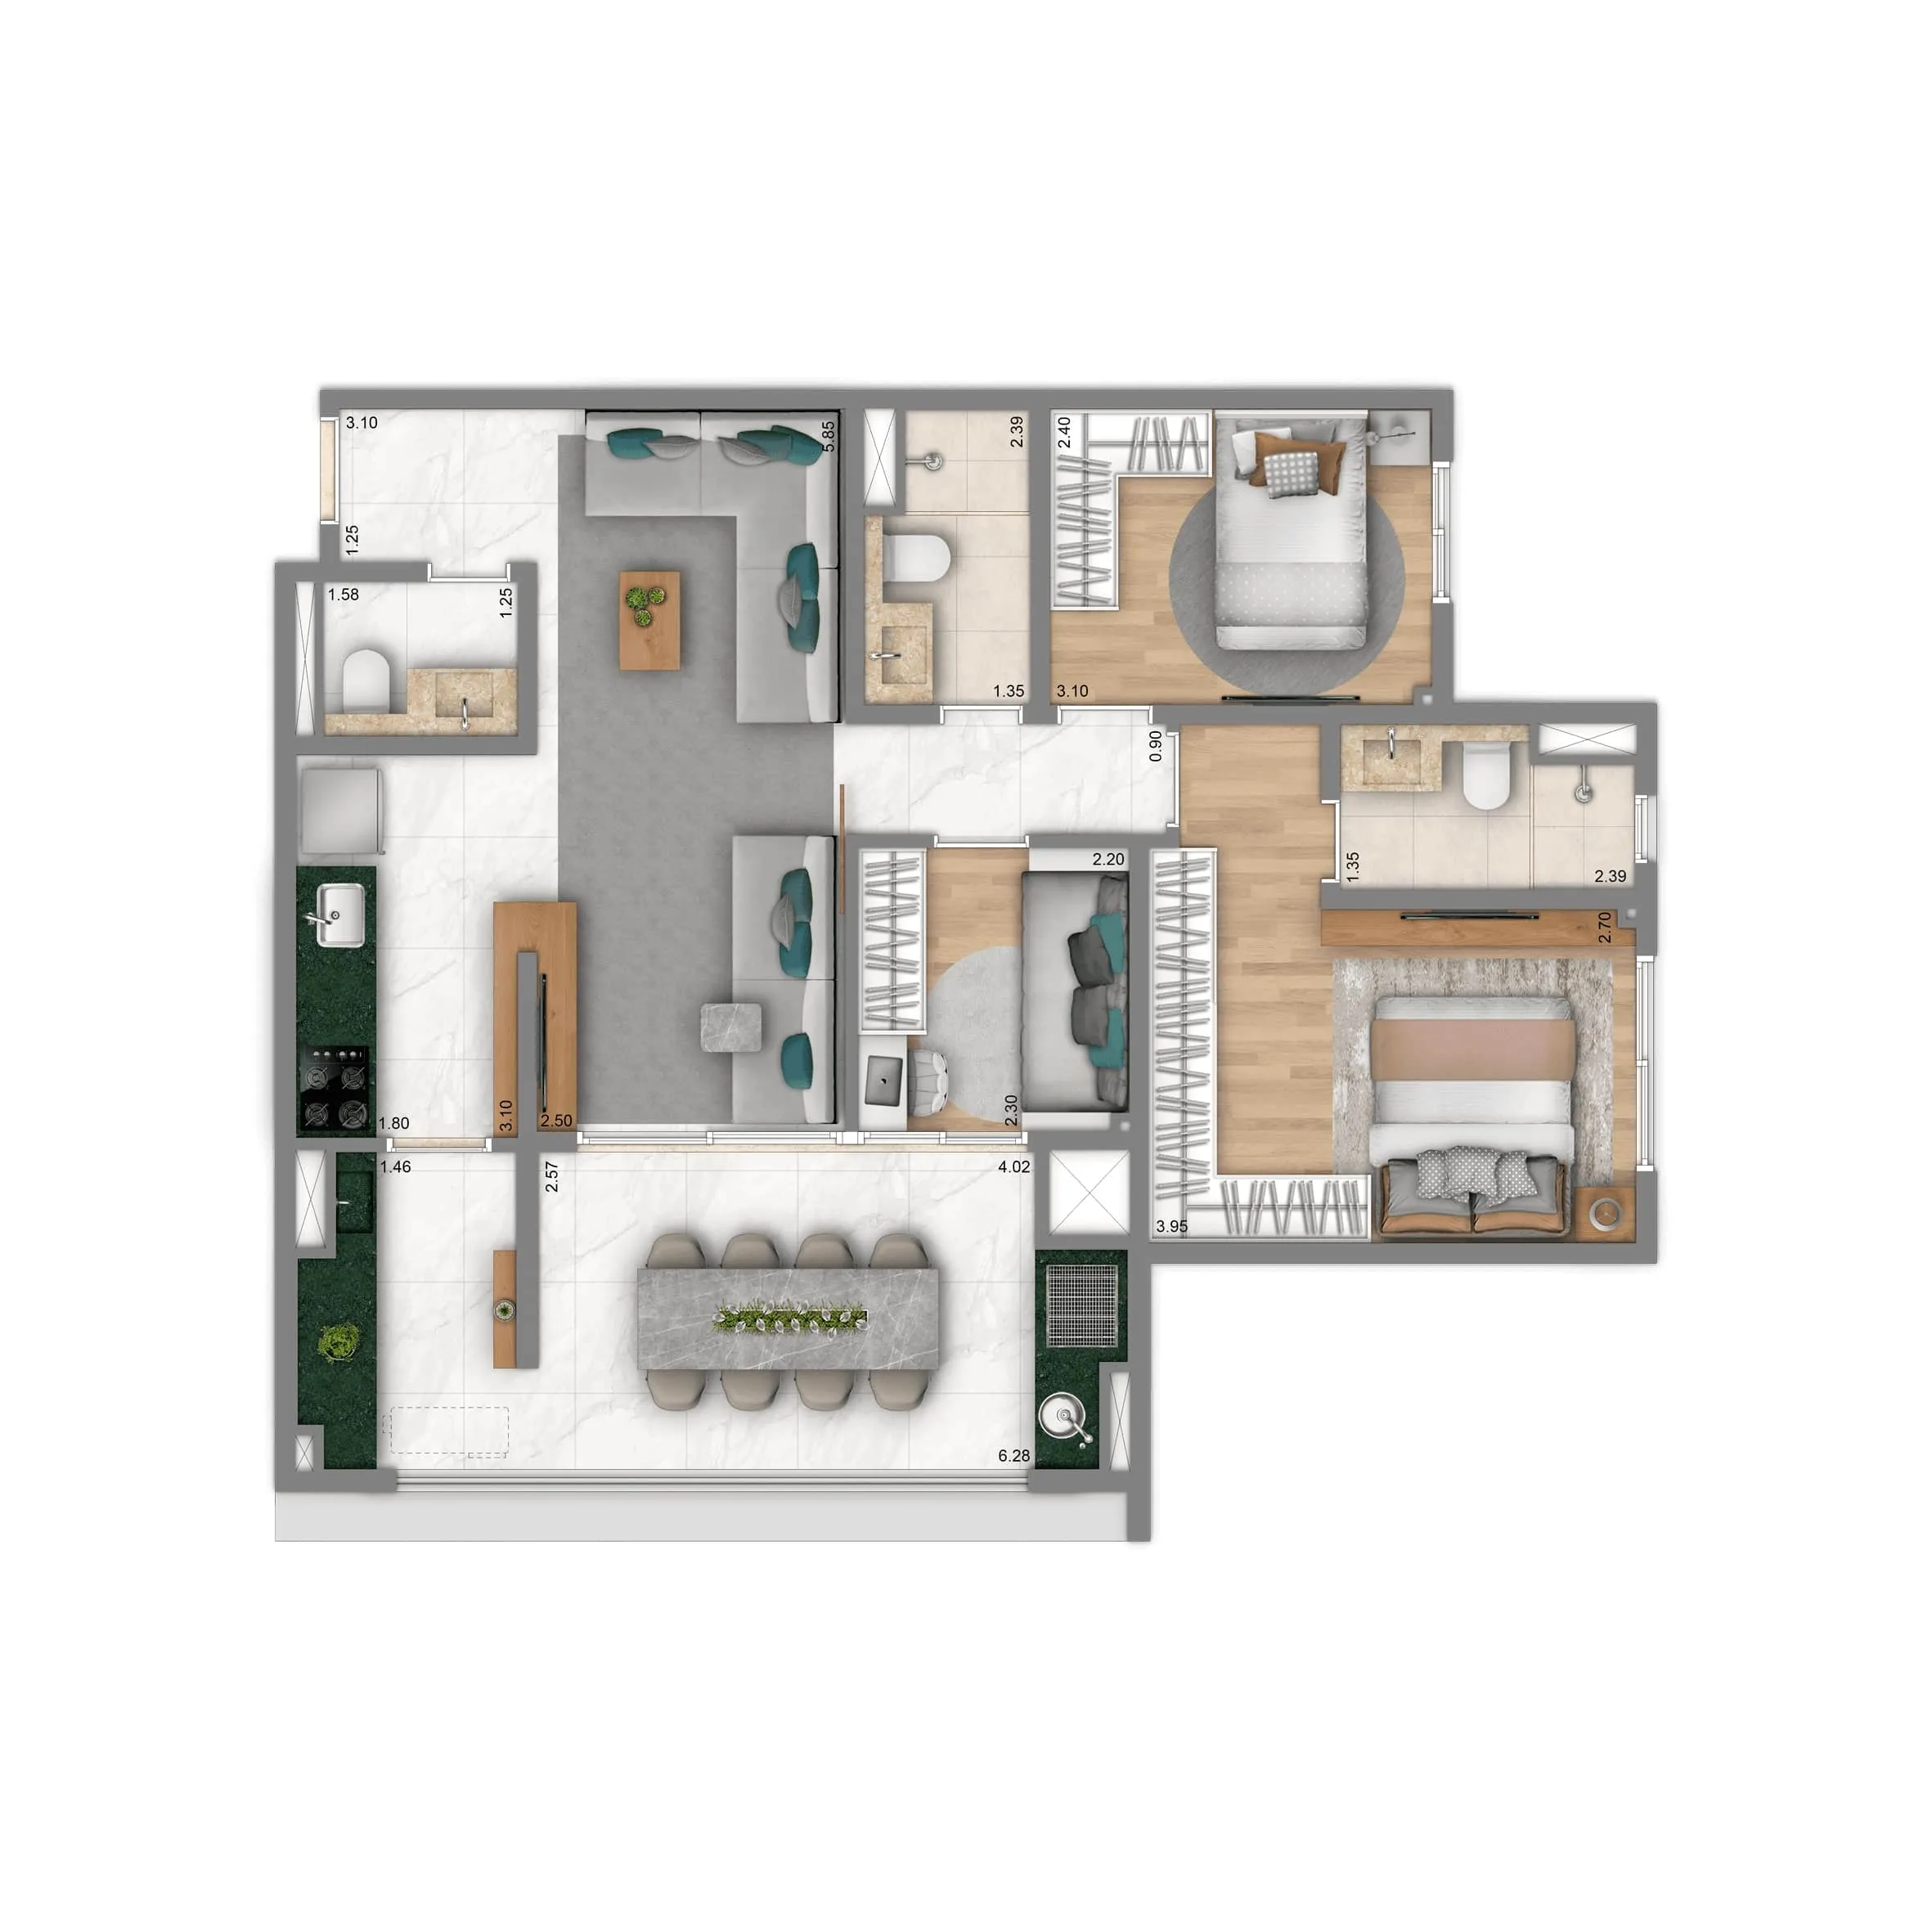 Planta-tipo 84 m² | 3 Dorms. (1 suíte)